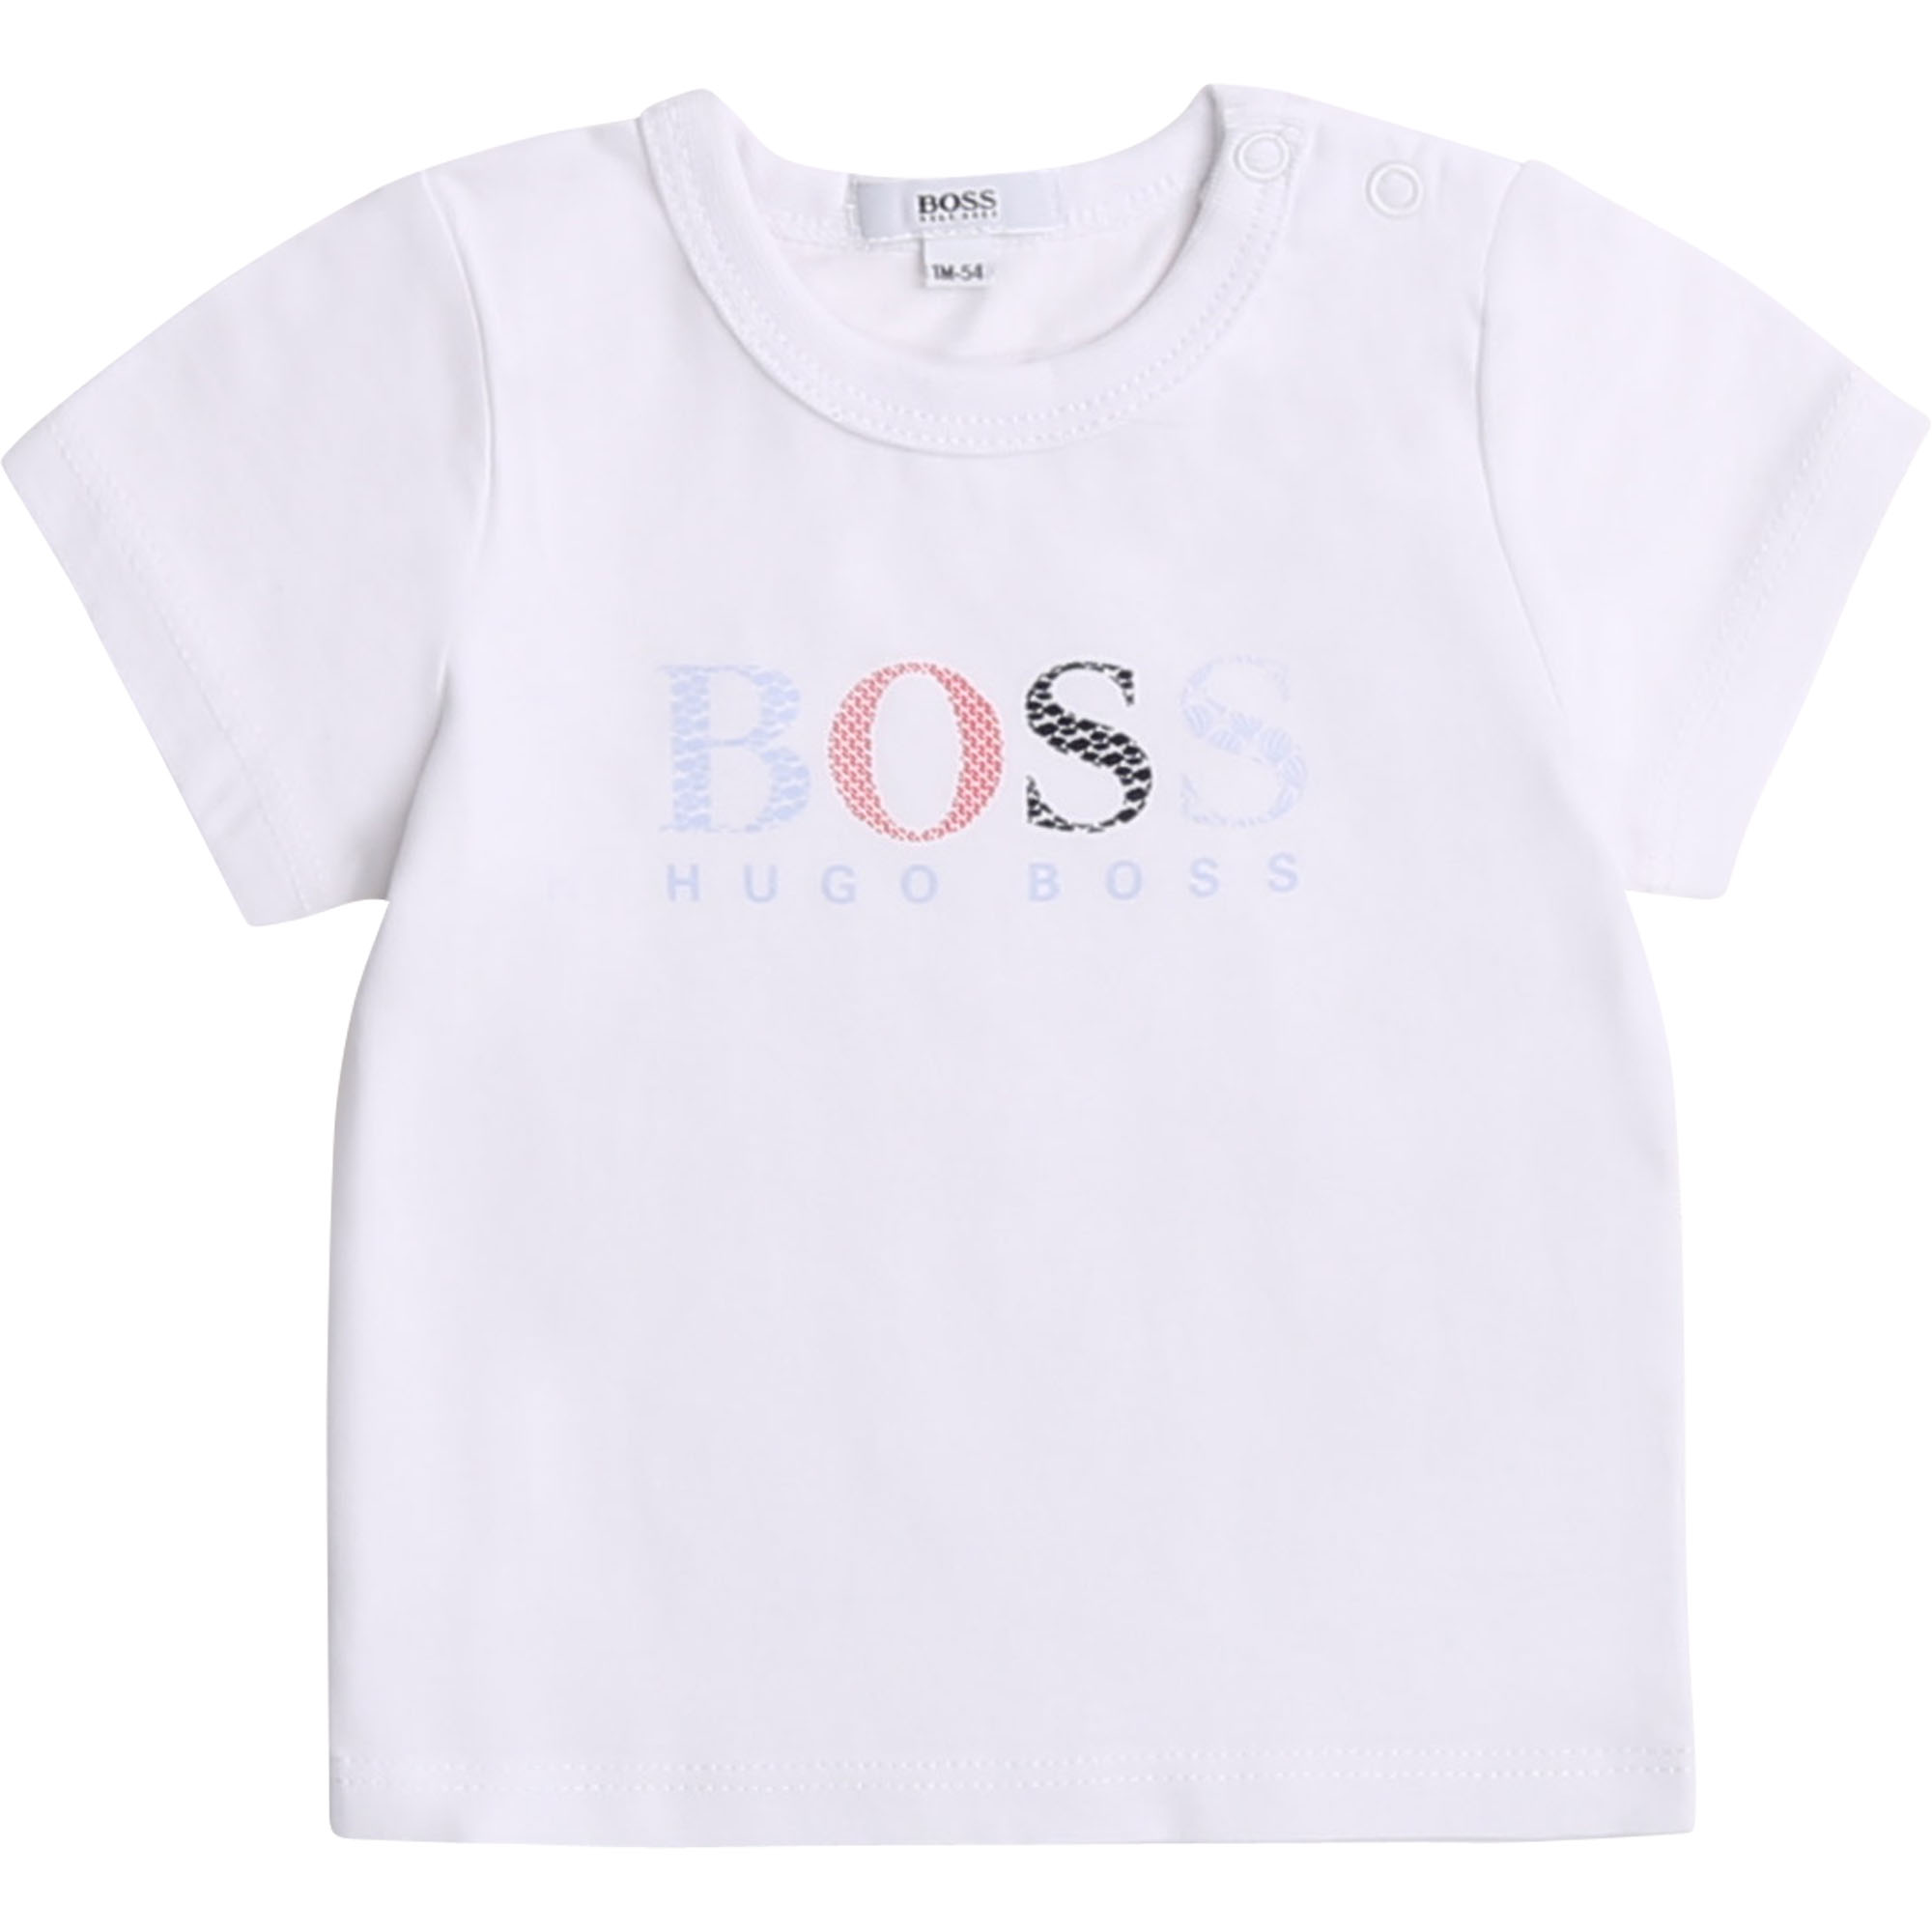 hugo boss baby shirt